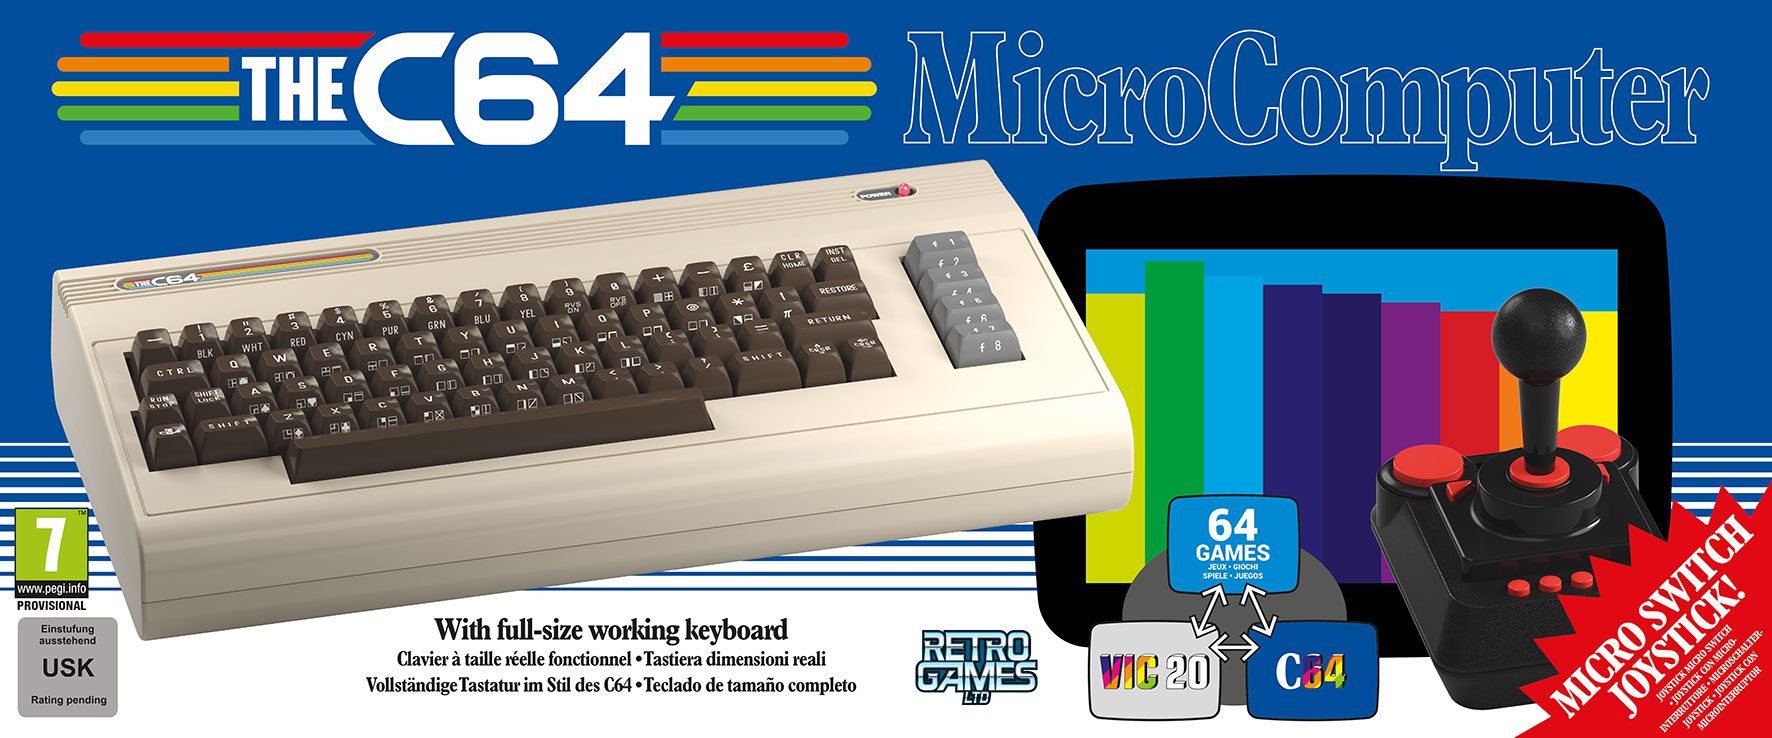 Die Wiedergeburt des weltweit meistverkauften Computers THEC64 (Commodore 64)